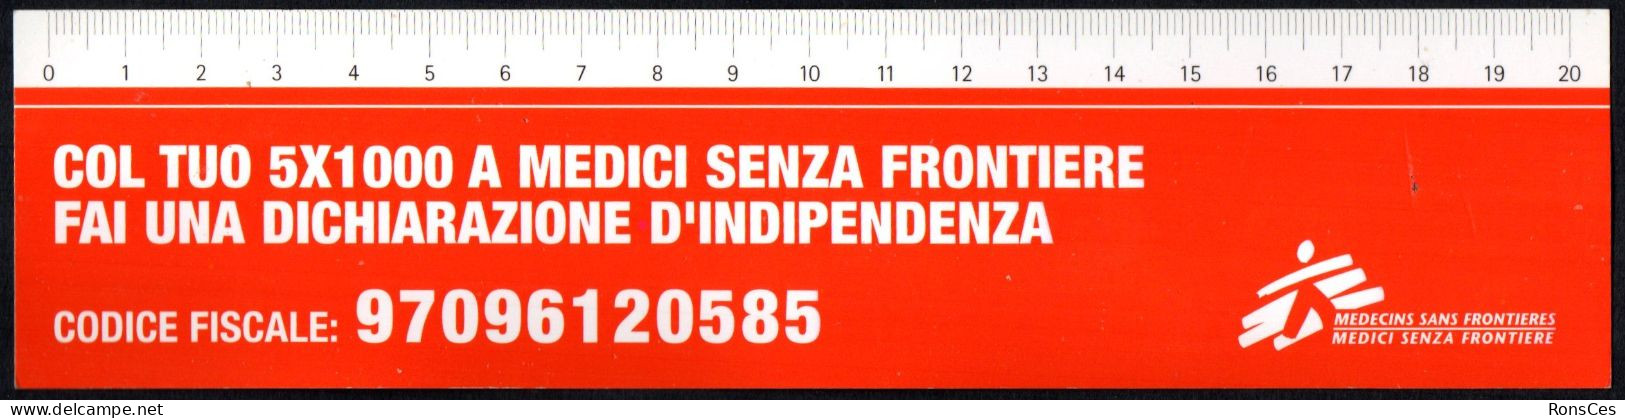 ITALIA SEGNALIBRO / BOOKMARK / RIGHELLO - MEDICI SENZA FRONTIERE COL TUO 5x1000 FAI UNA DICHIARAZIONE D'INDIPENDENZA - I - Segnalibri